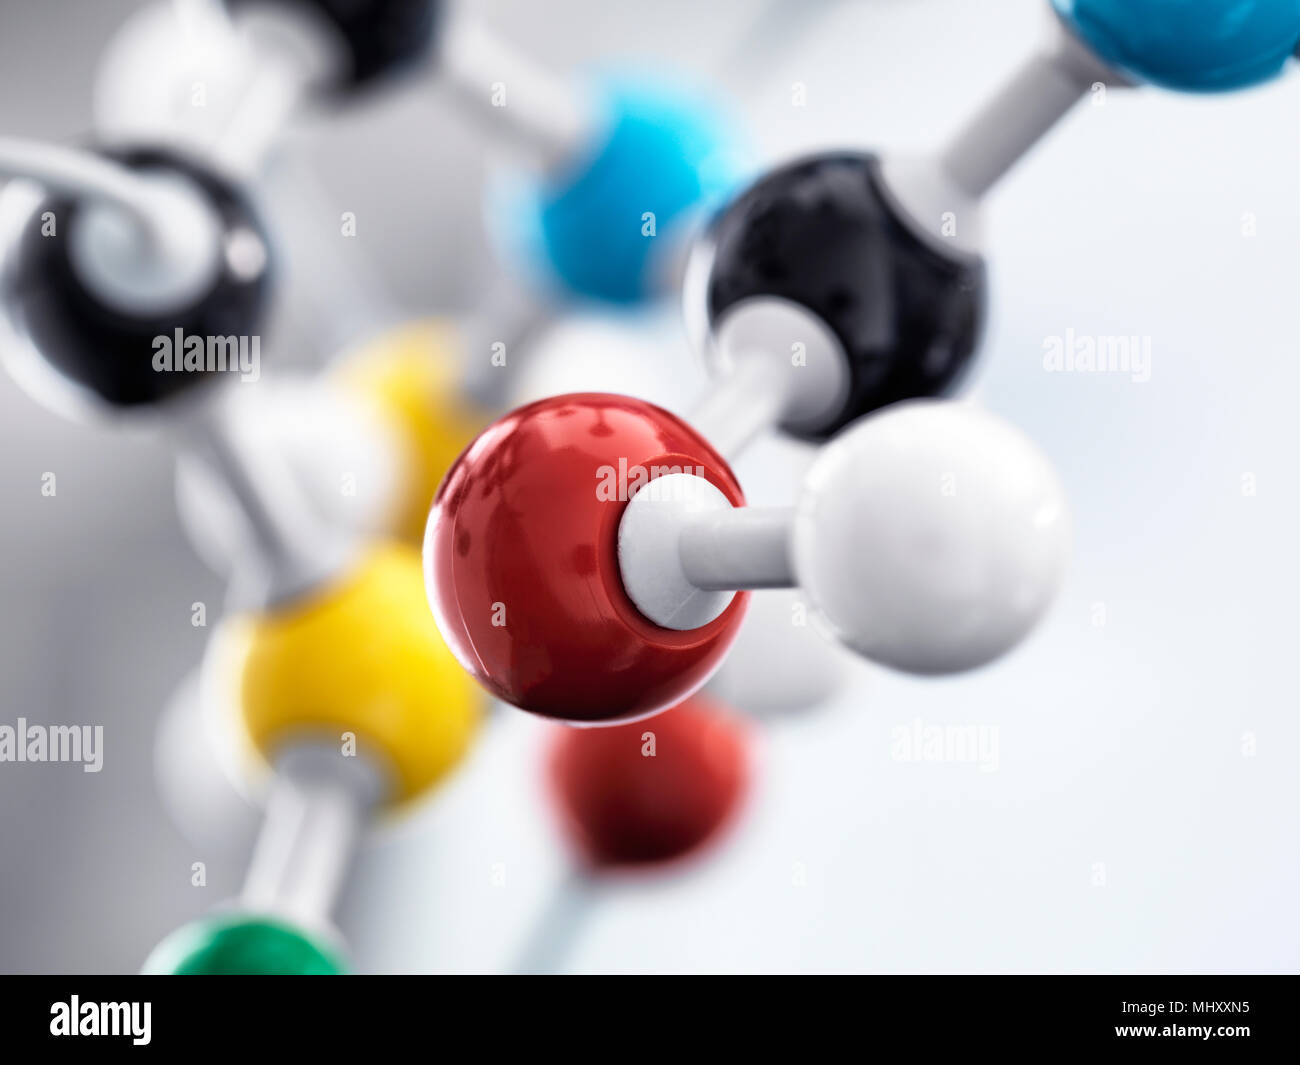 Sigue la vida de una bola y un stick modelo ilustrando una fórmula química utilizada en investigación Foto de stock